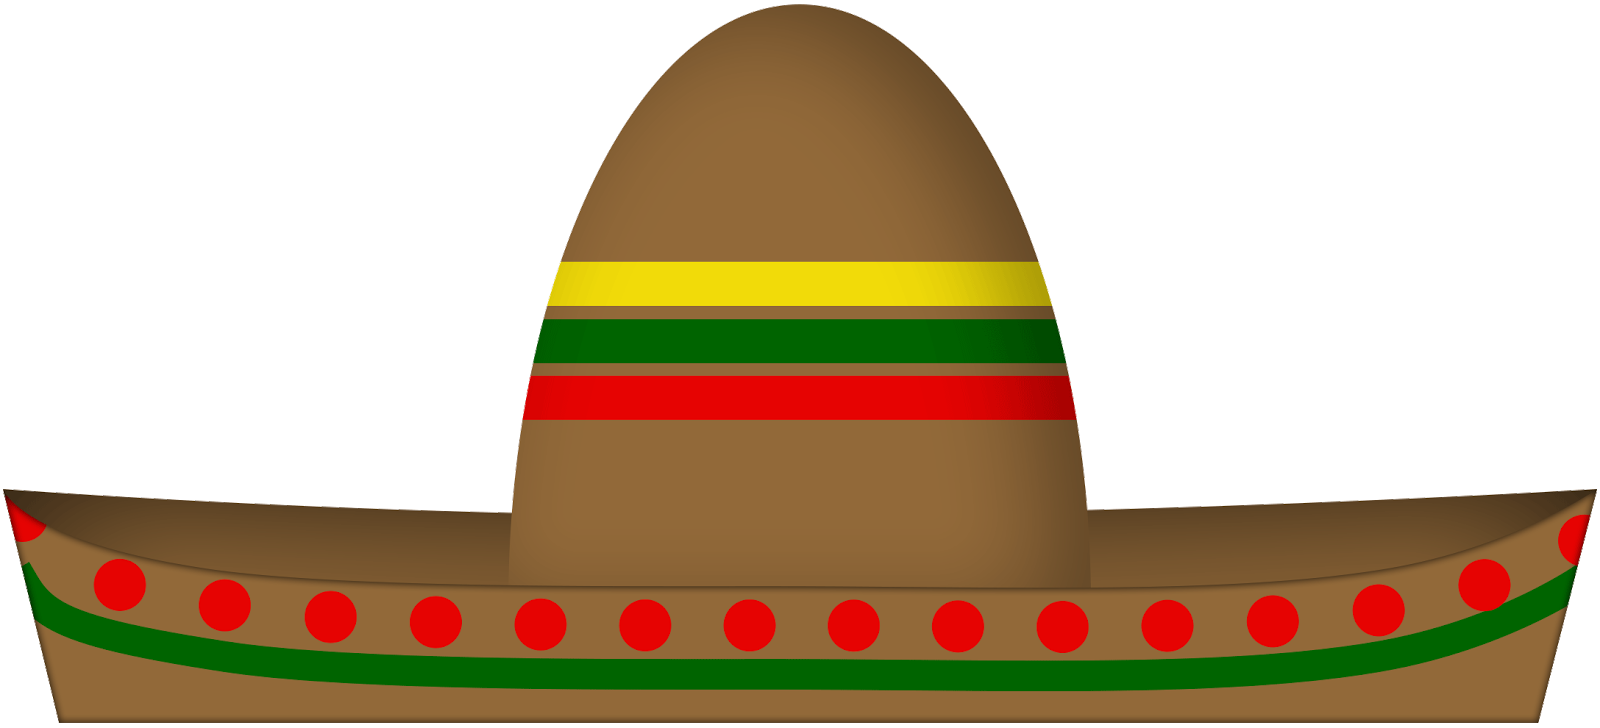 चौड़े किनारे की एक प्रकार की अँग्रेज़ी टोपी